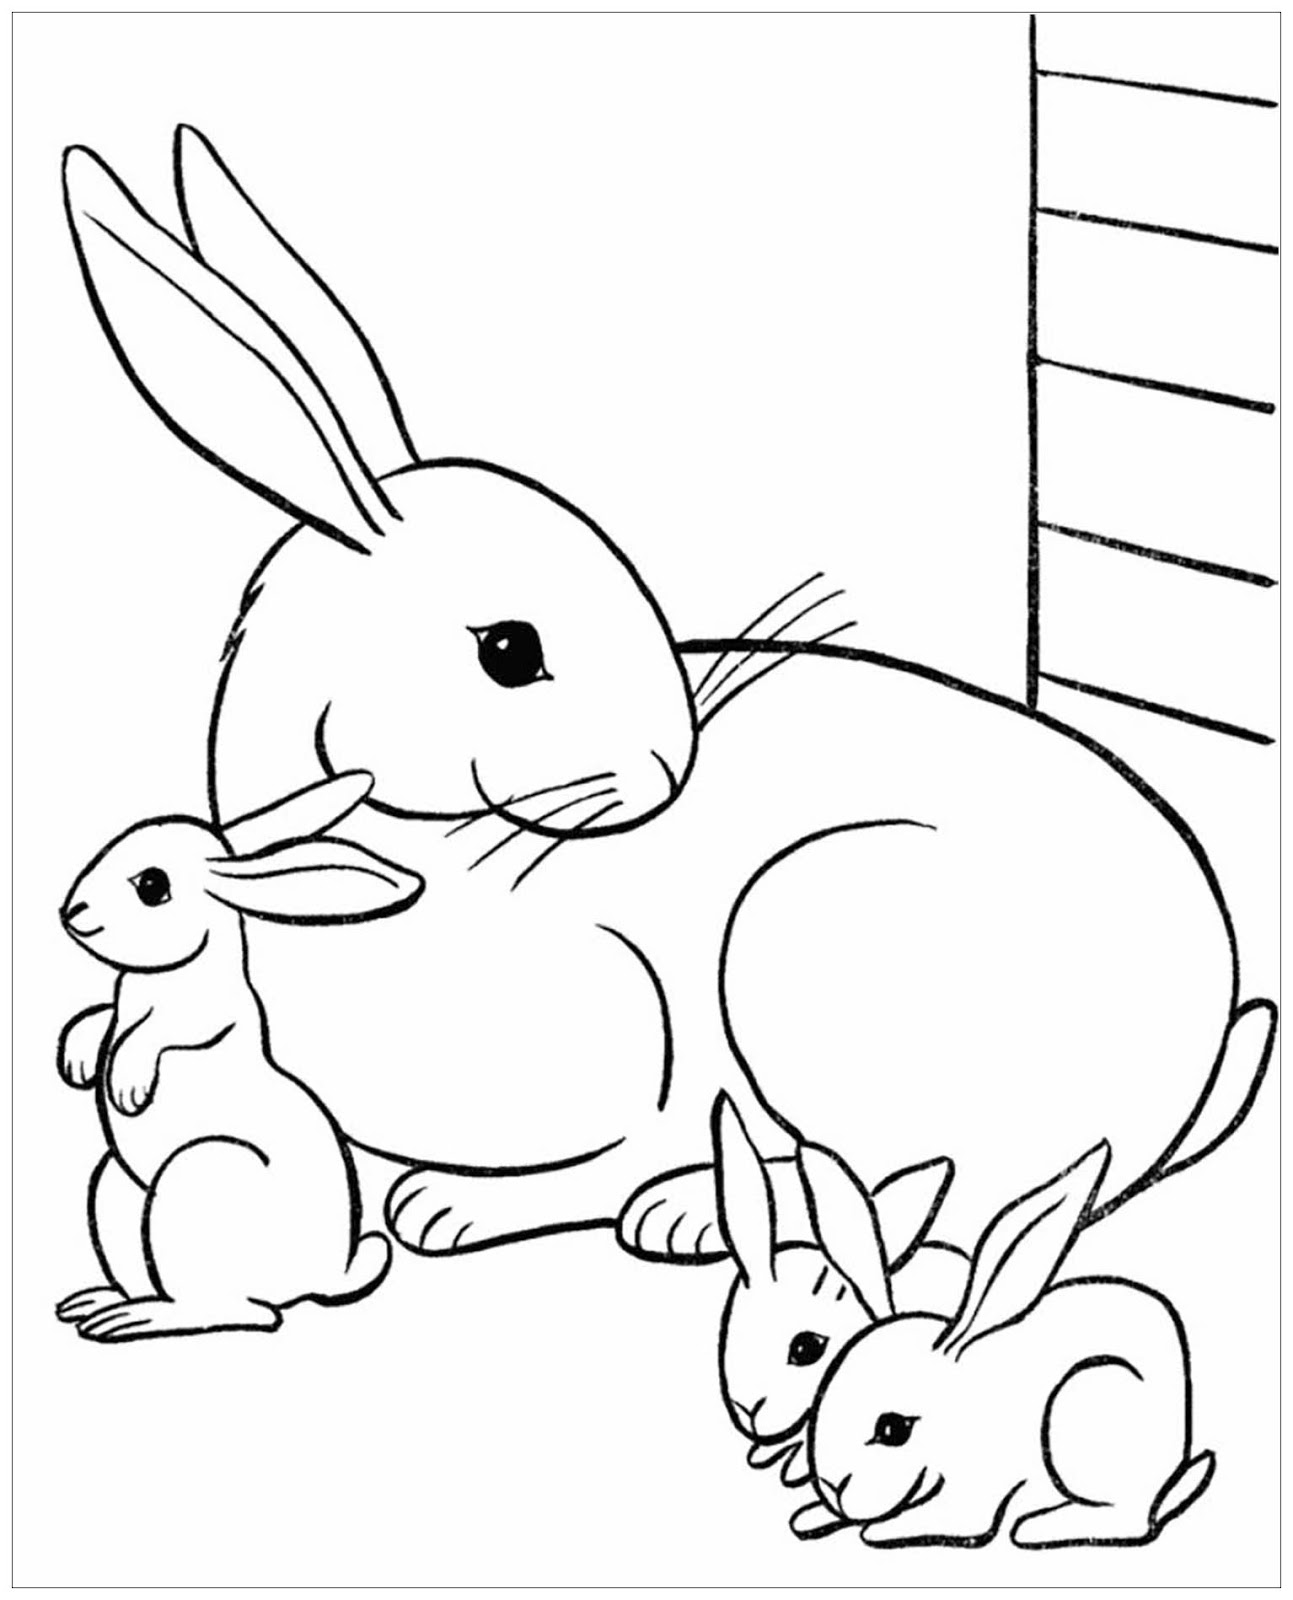 Tranh tô màu thỏ mẹ và 3 chú thỏ con